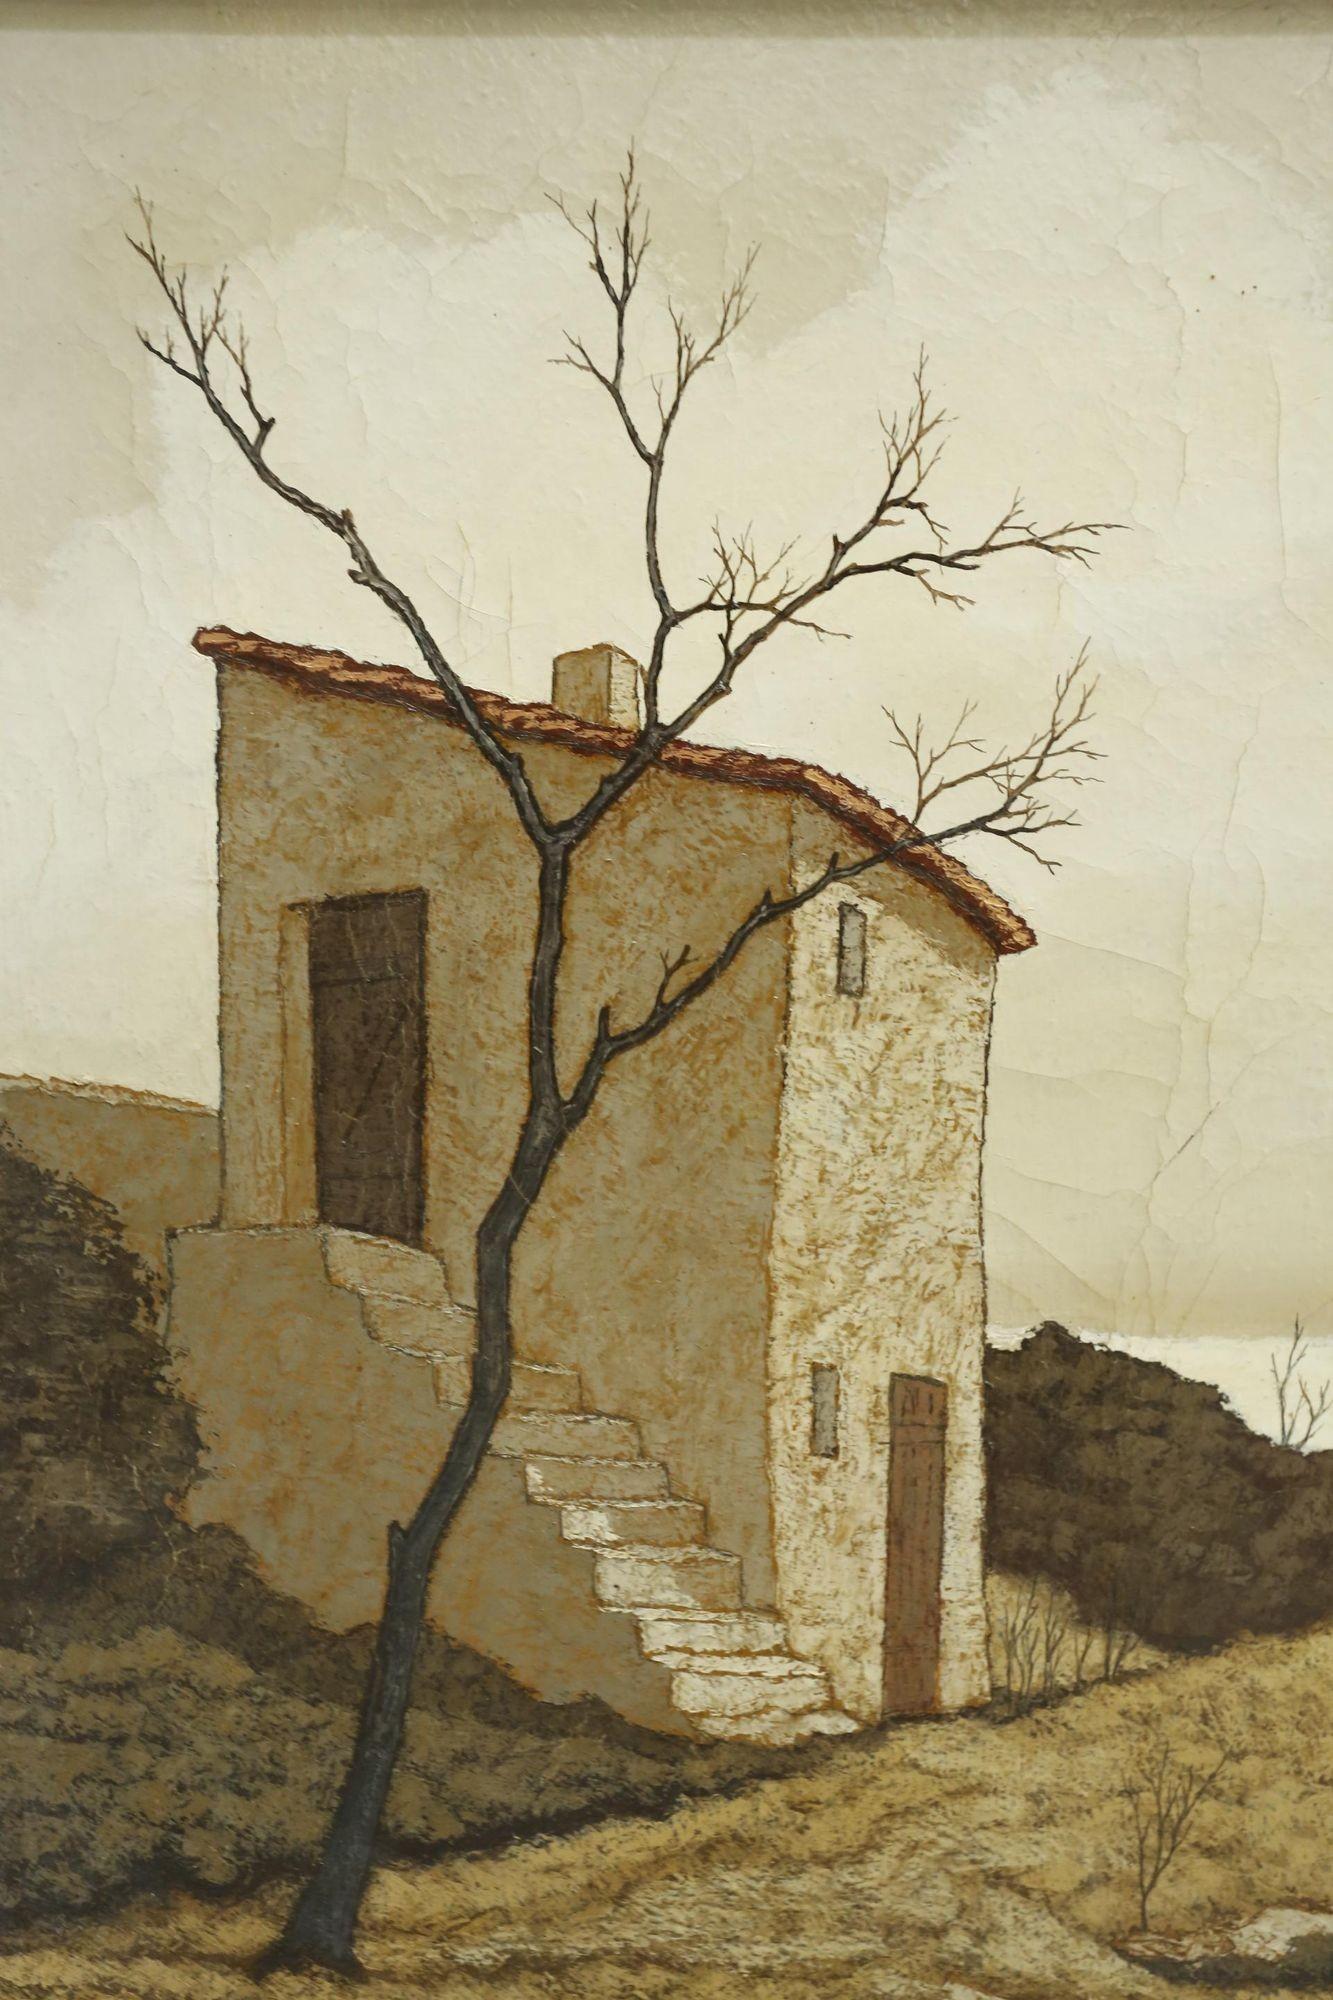 Il s'agit d'une peinture de très haute qualité du 20e siècle de l'artiste espagnol Jorge Soteras. Étude inhabituelle d'une villa isolée. La finesse des arbres est un détail caractéristique de Soteras et donne vraiment de l'émotion à la peinture. La